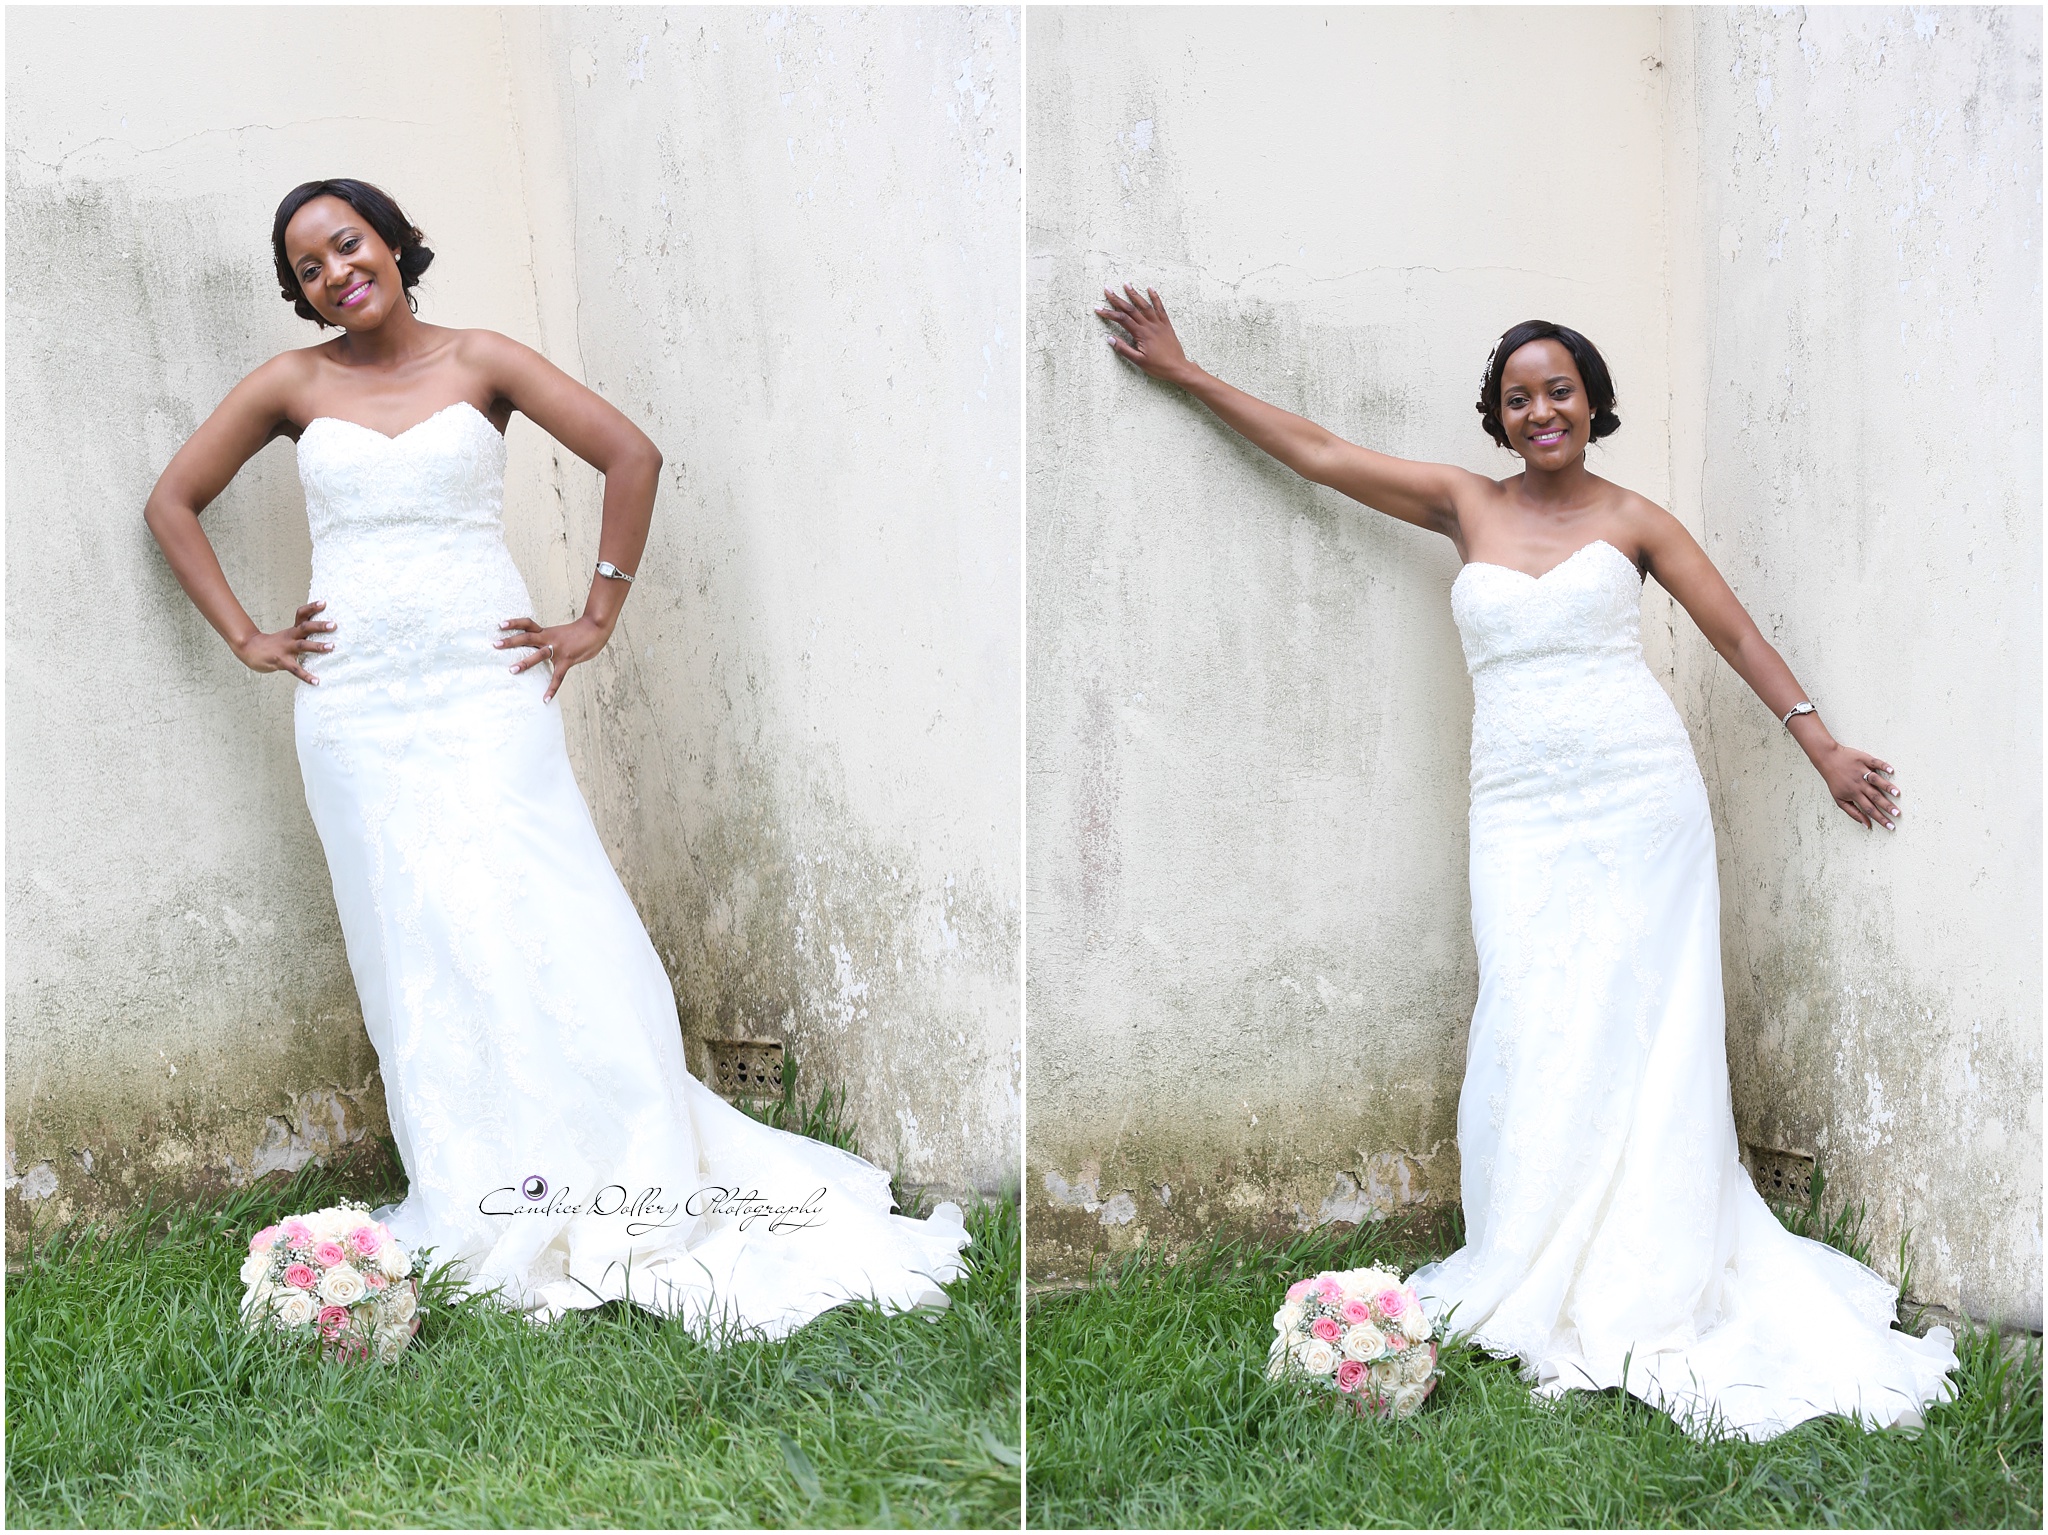 Masivuye & Khuselo's Wedding - Candice Dollery Photography_7270